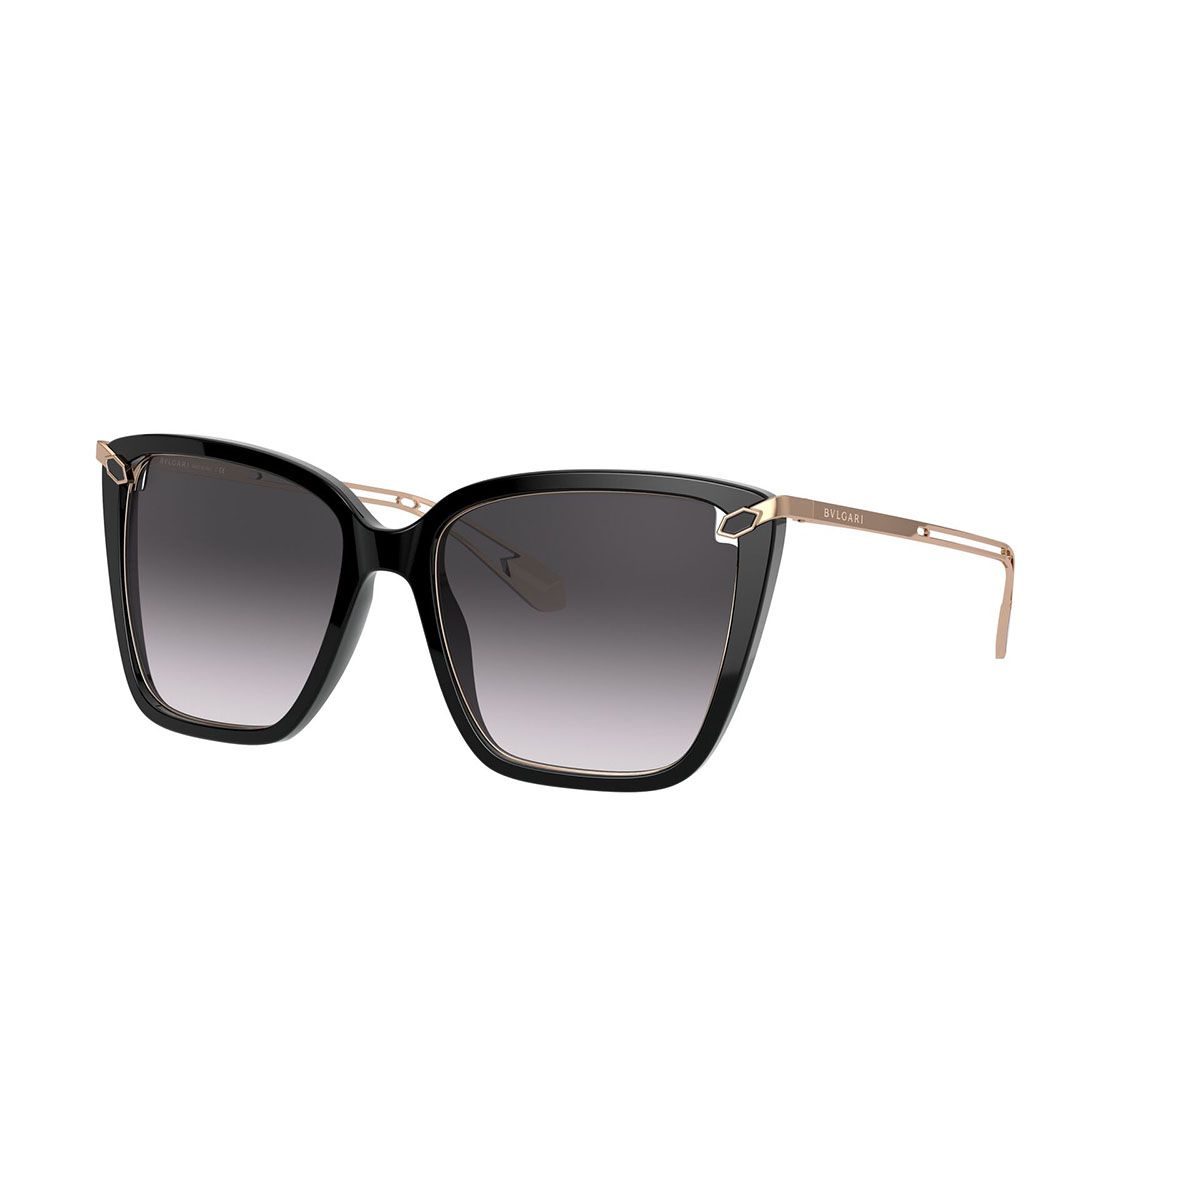 BV8232 Square Sunglasses 501 8G - size 54